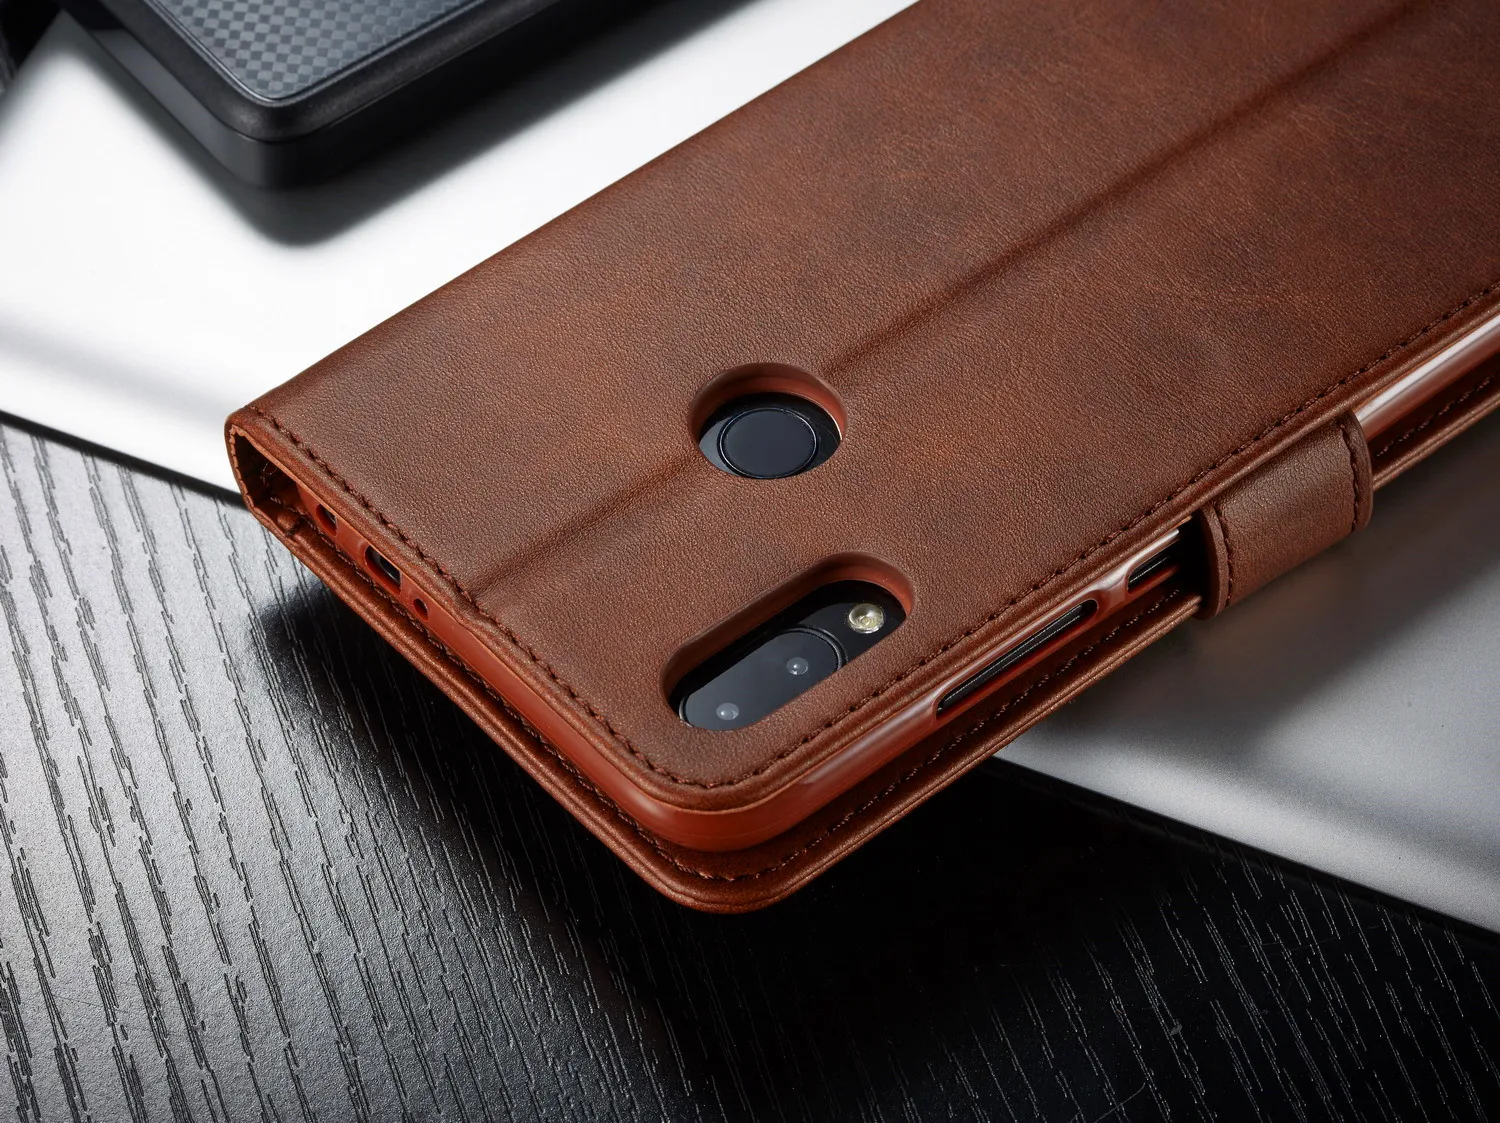 Деловой Роскошный кожаный чехол-кошелек, чехол для телефона Xiaomi Redmi Note 7, Магнитный чехол для Xiaomi Redmi 7, чехол, etui Funda